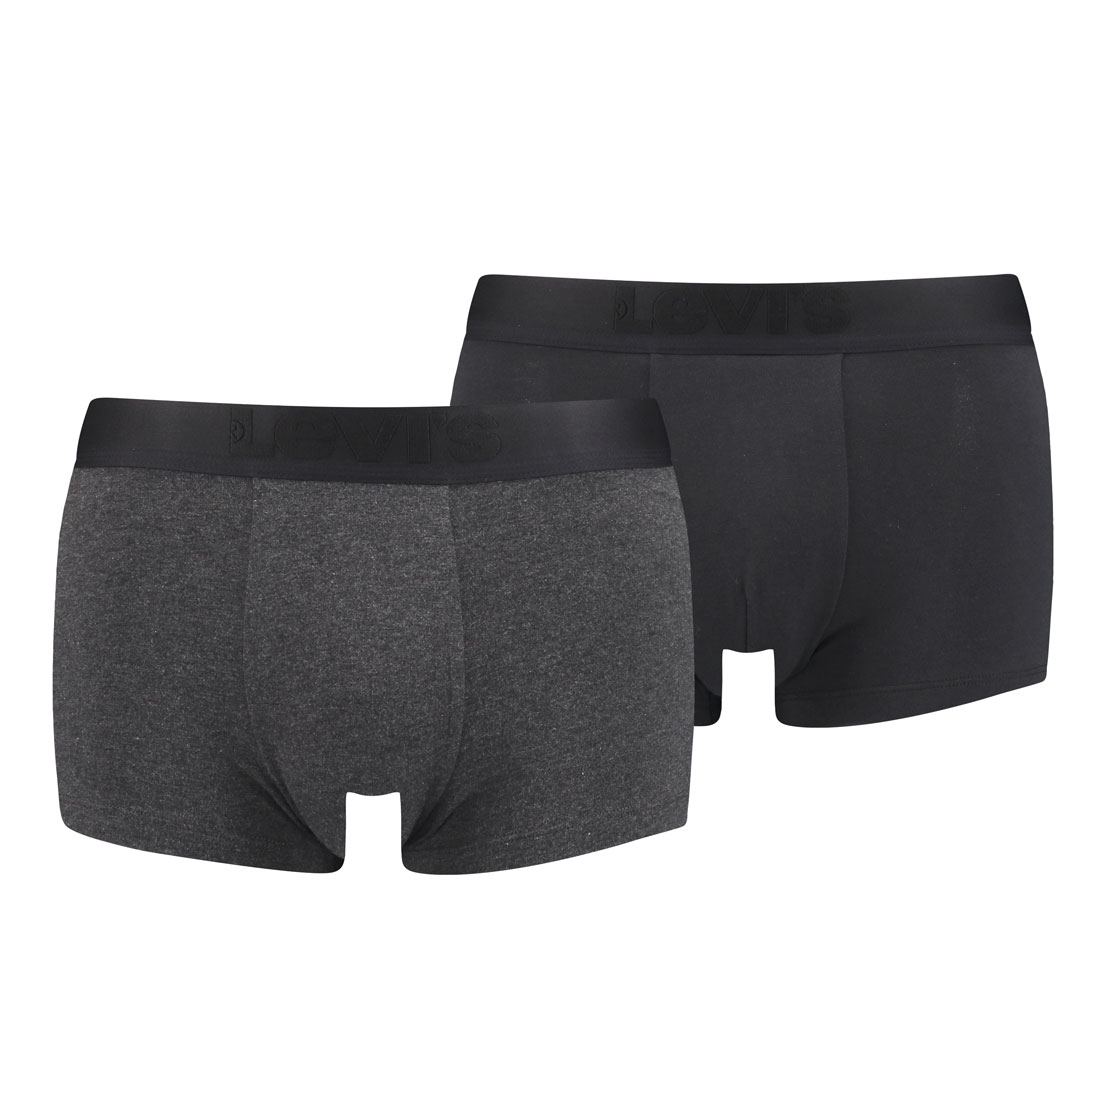 2er Pack Levis Herren Premium Trunk Boxer Shorts Unterhose Pant Unterwäsche